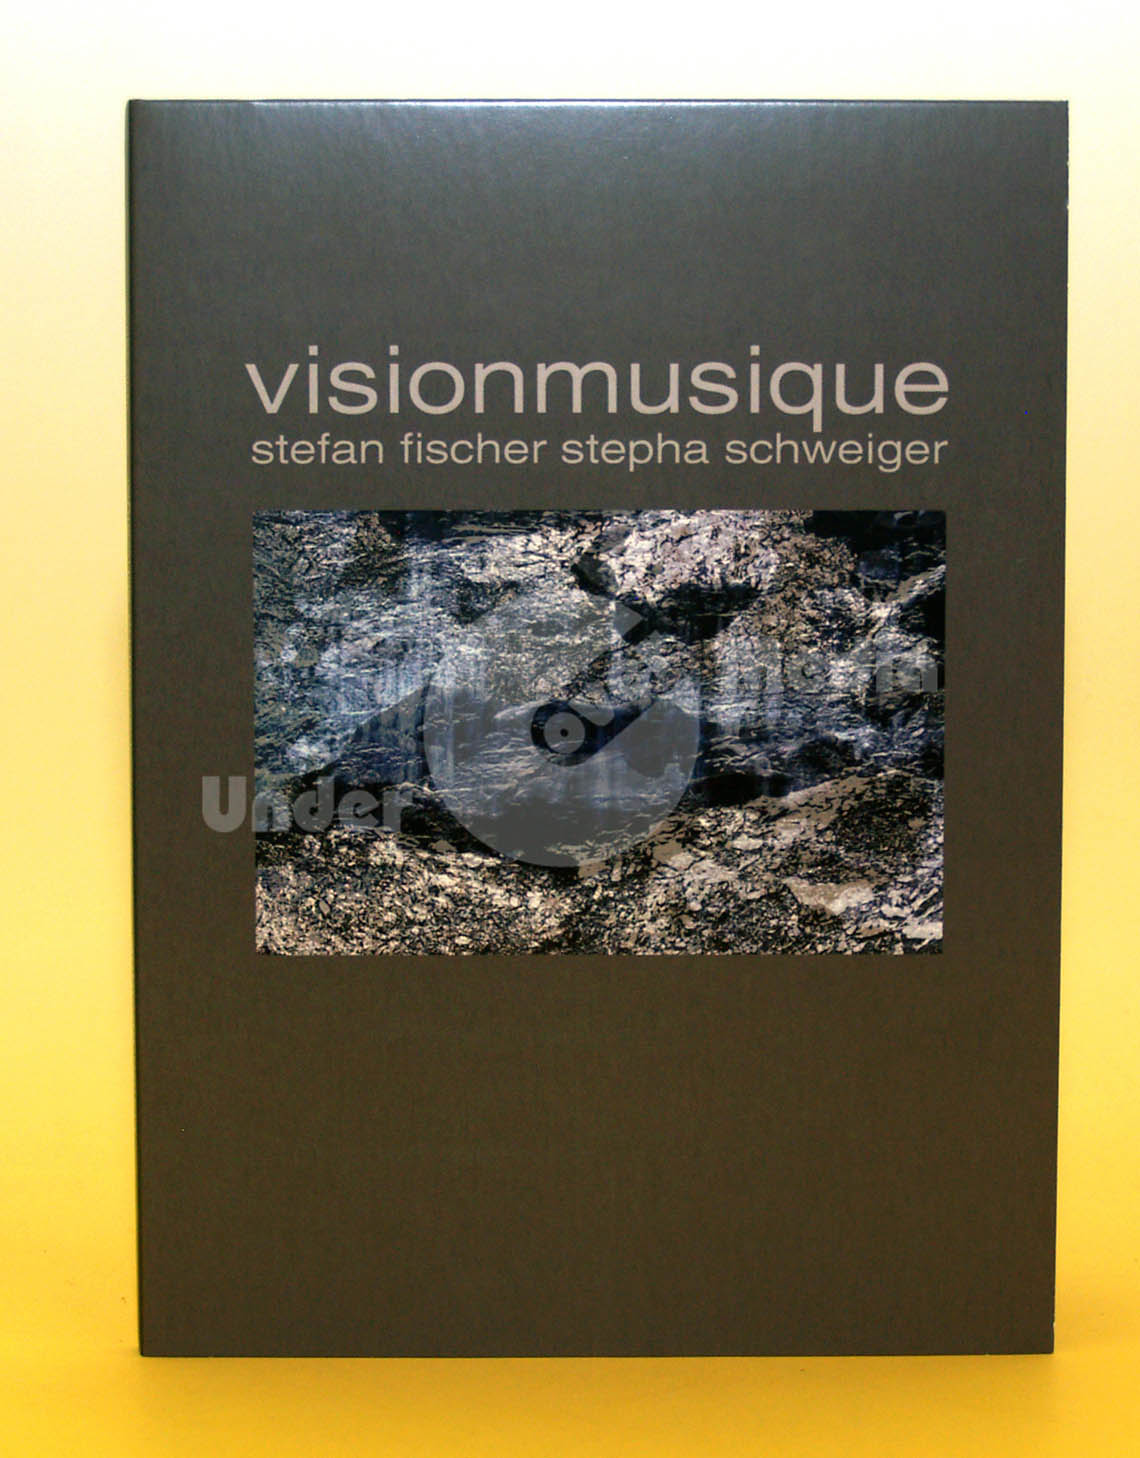 Stepha Schweiger – Visionmusique DVD